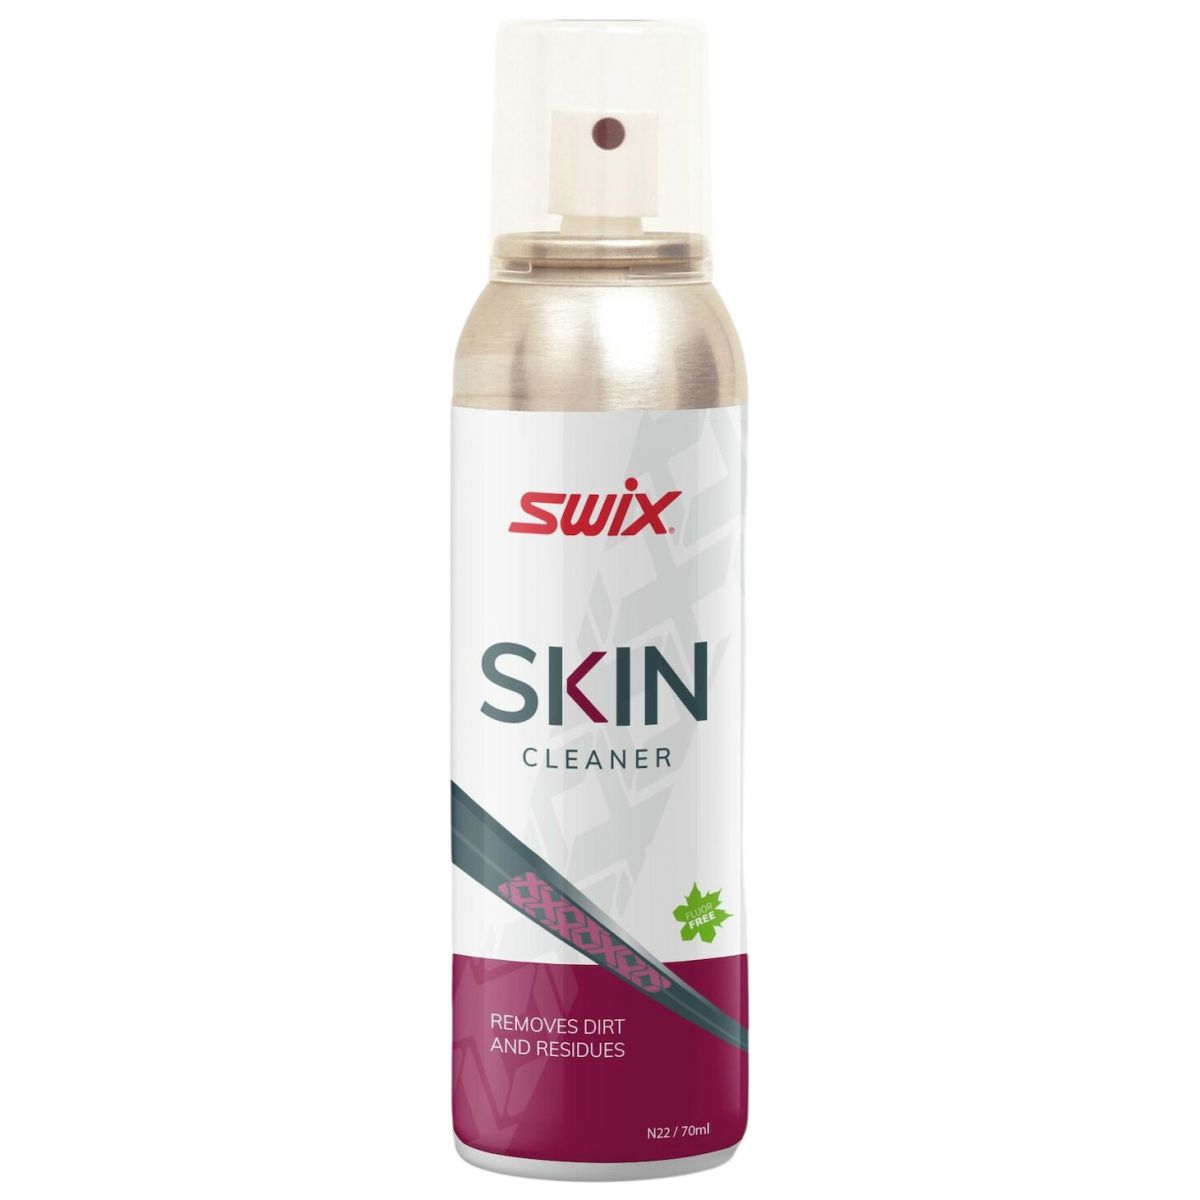 Billede af Swix Skin Cleaner, spray, 70ml